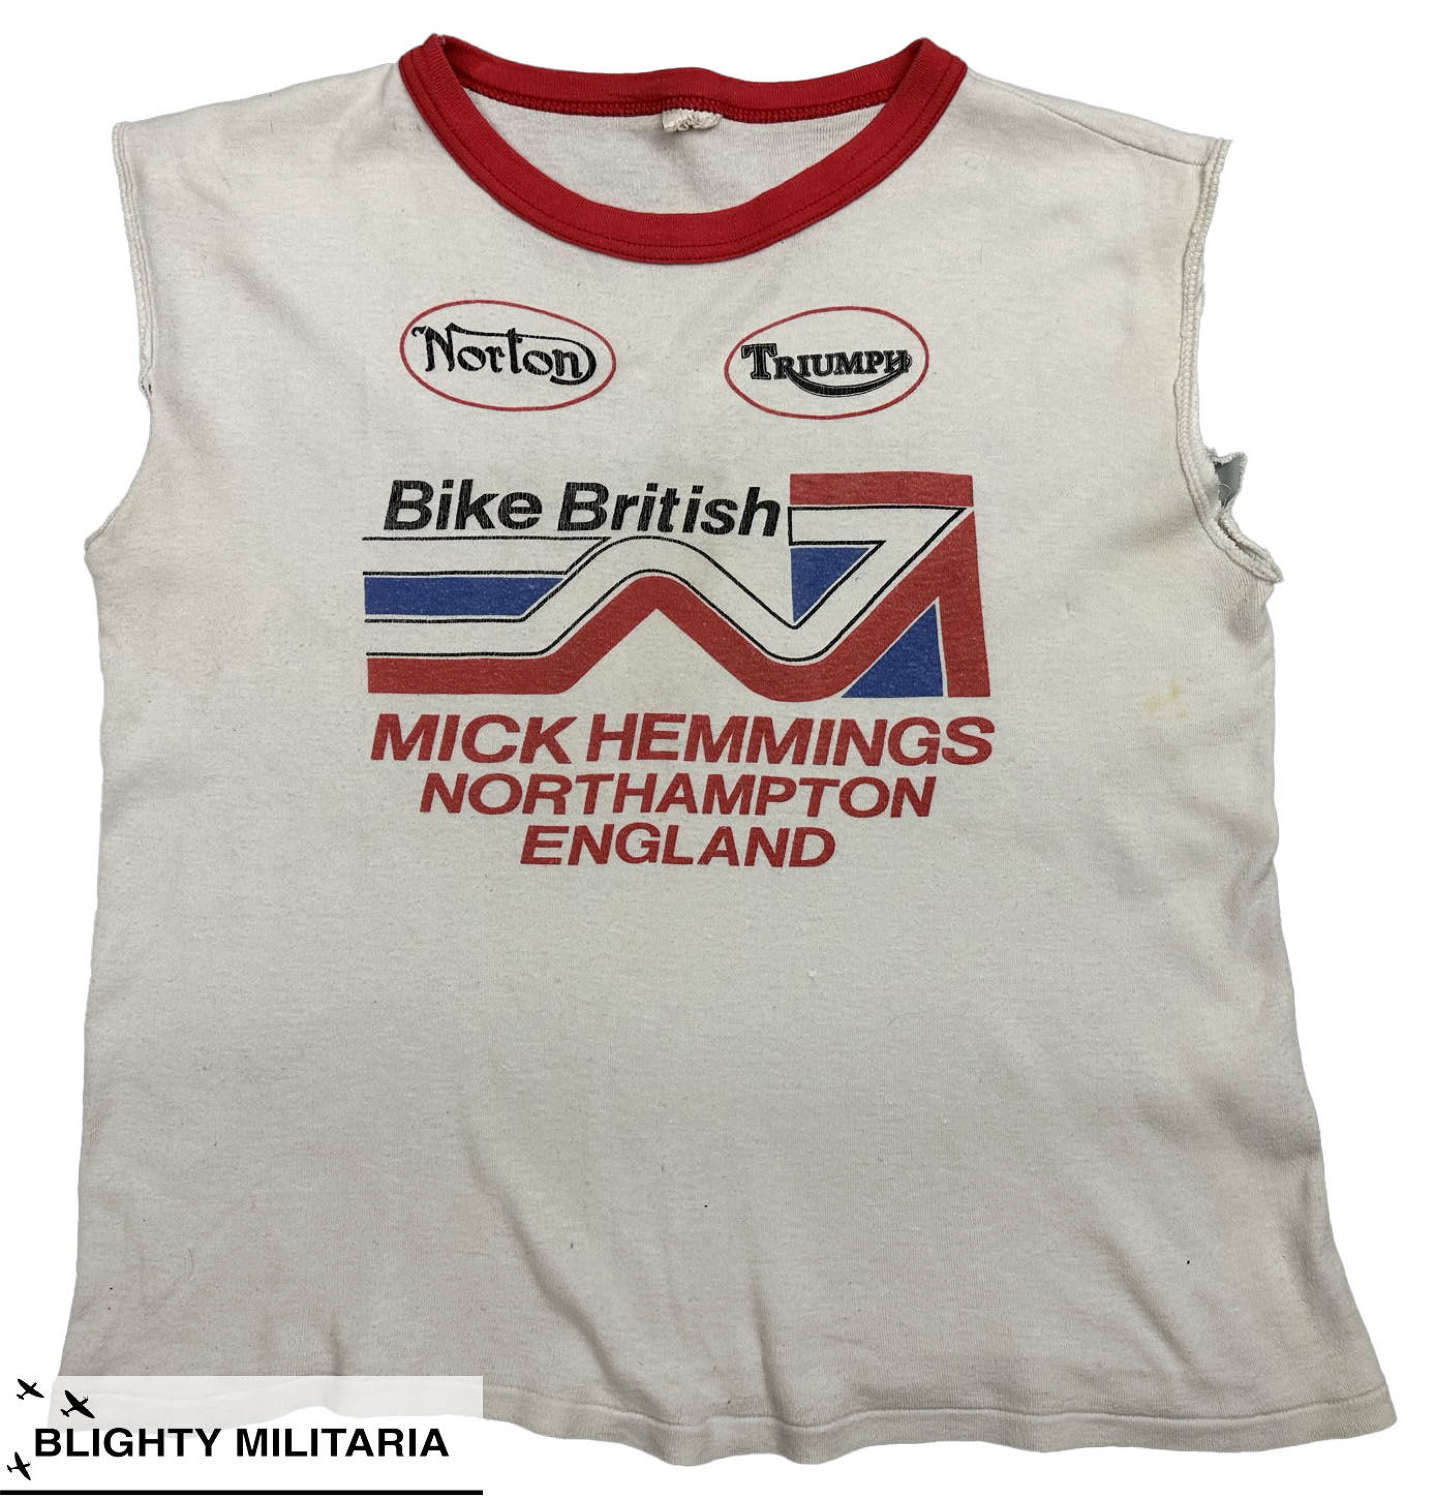 Original 1970s Mick Hemmings British Bike Cut-off T-Shirt